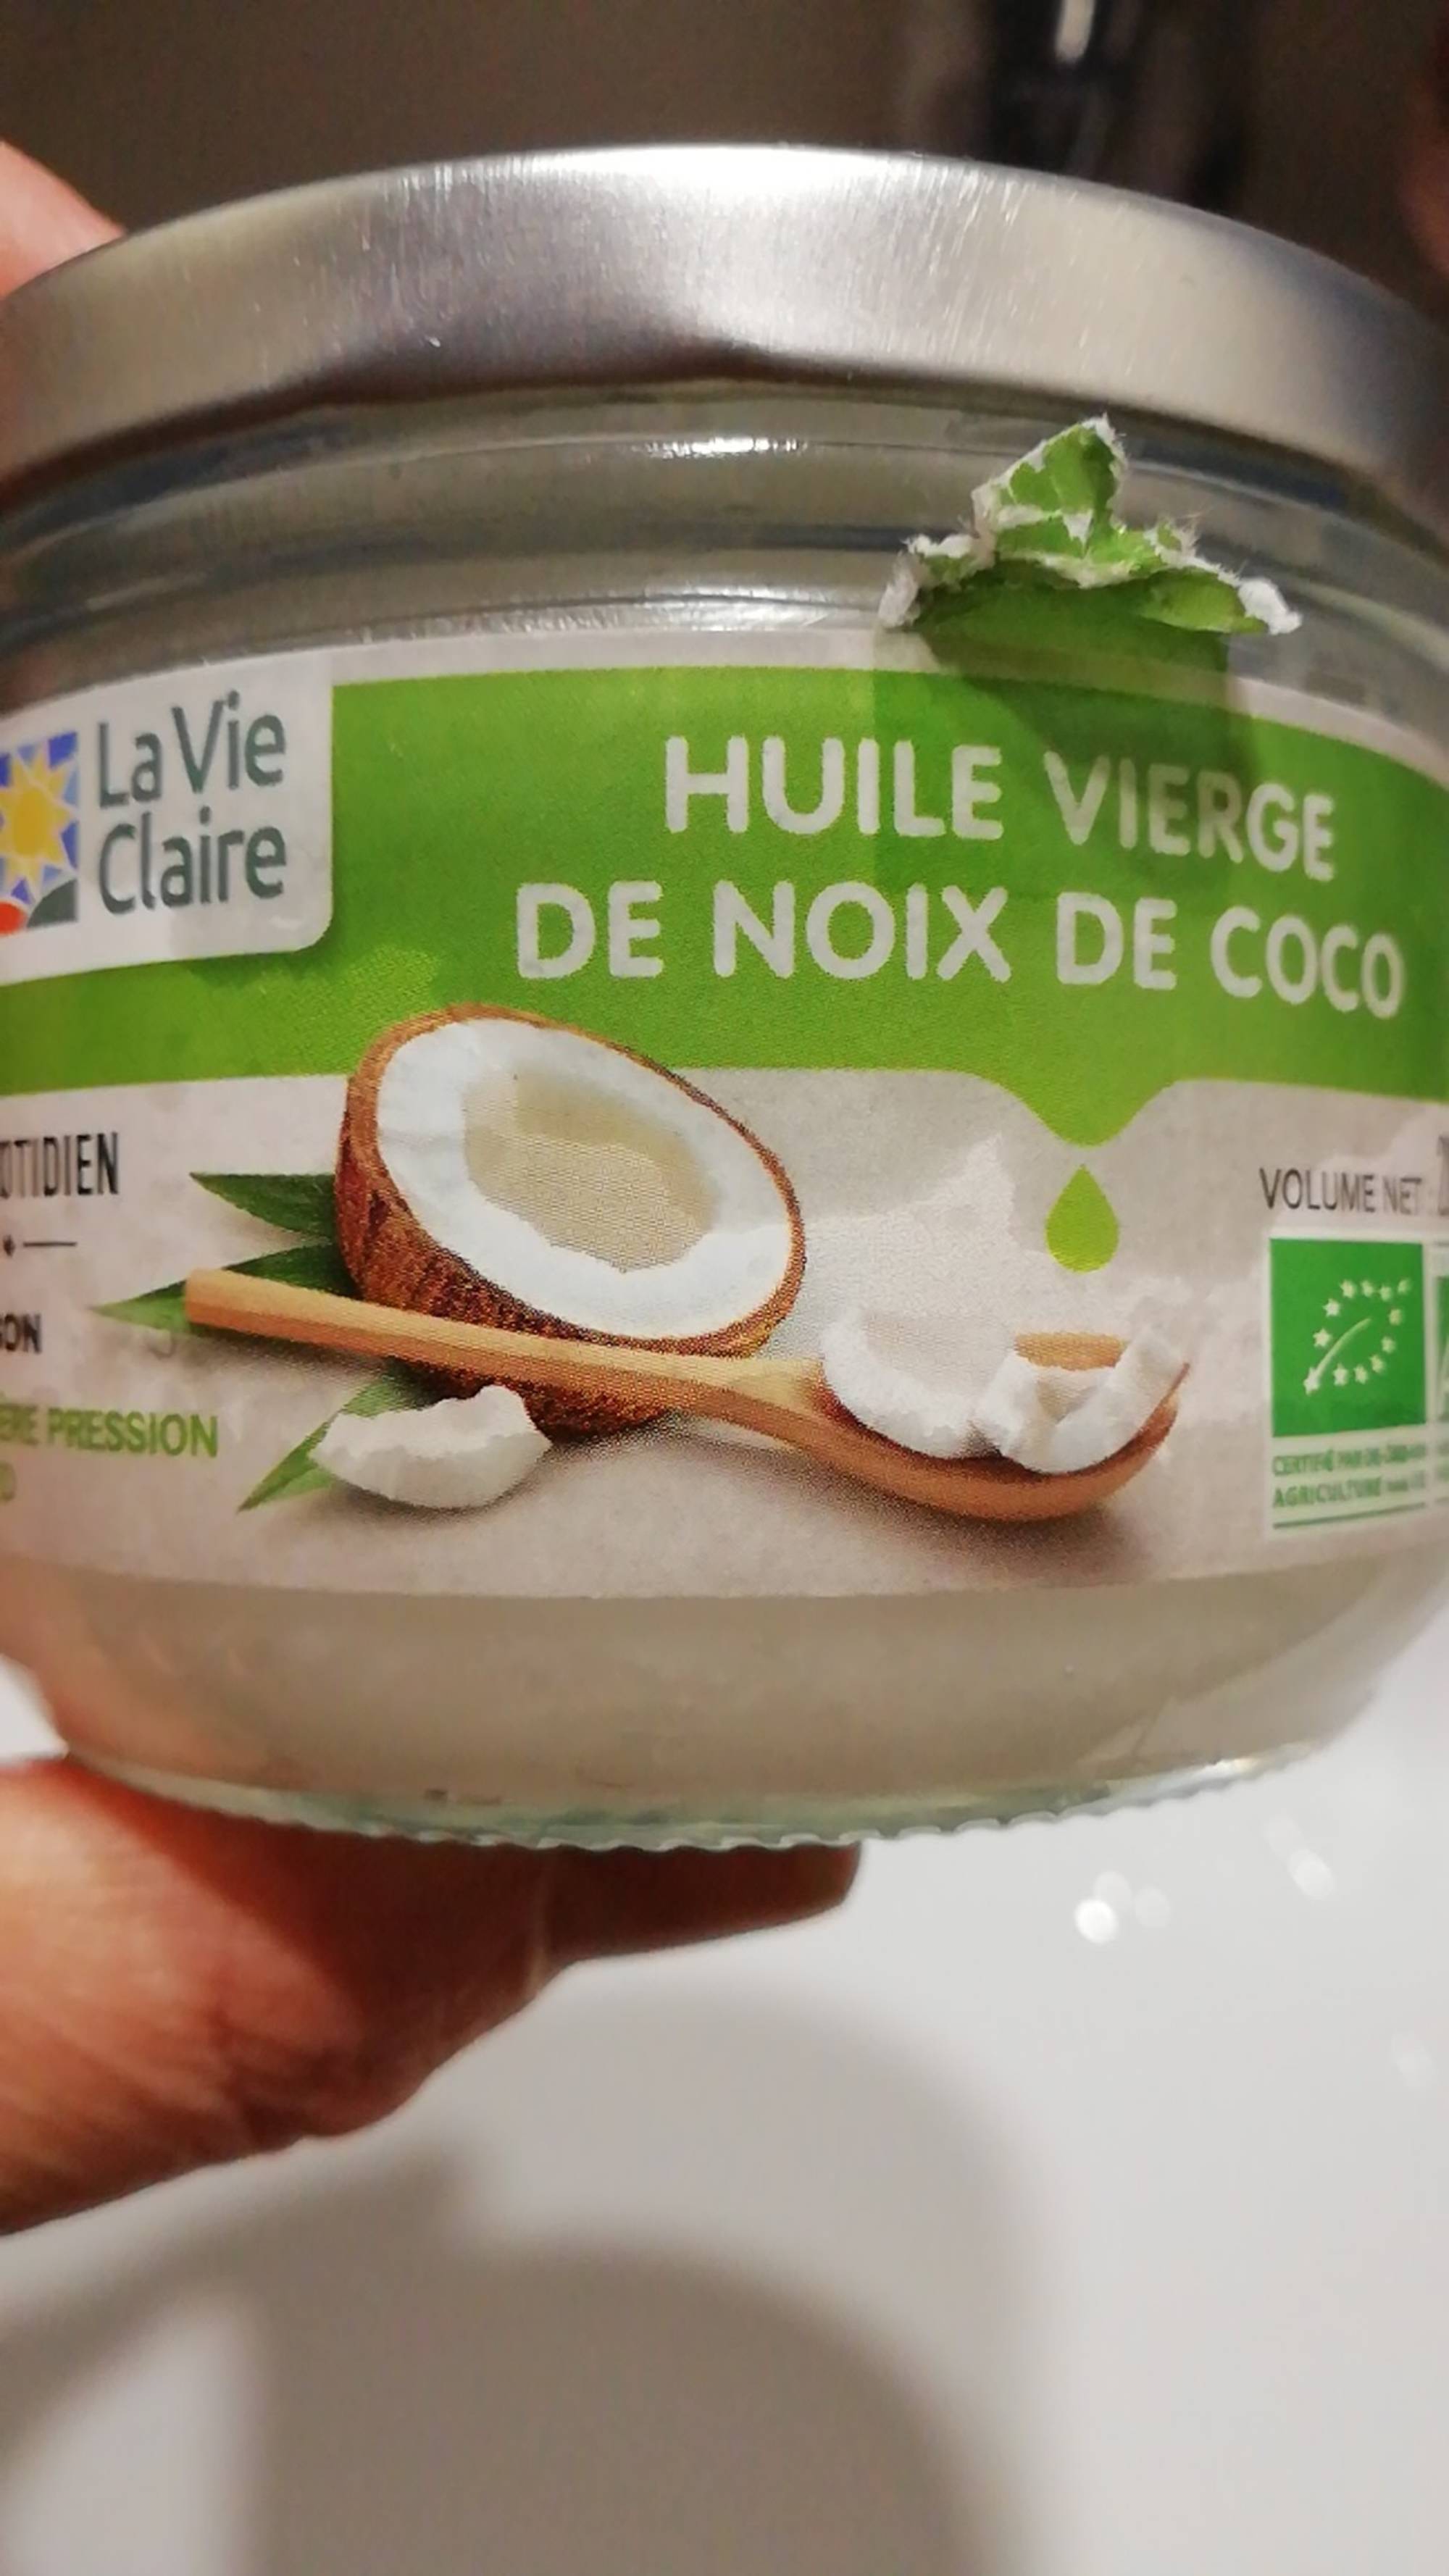 LA VIE CLAIRE - Huile vierge de noix de coco